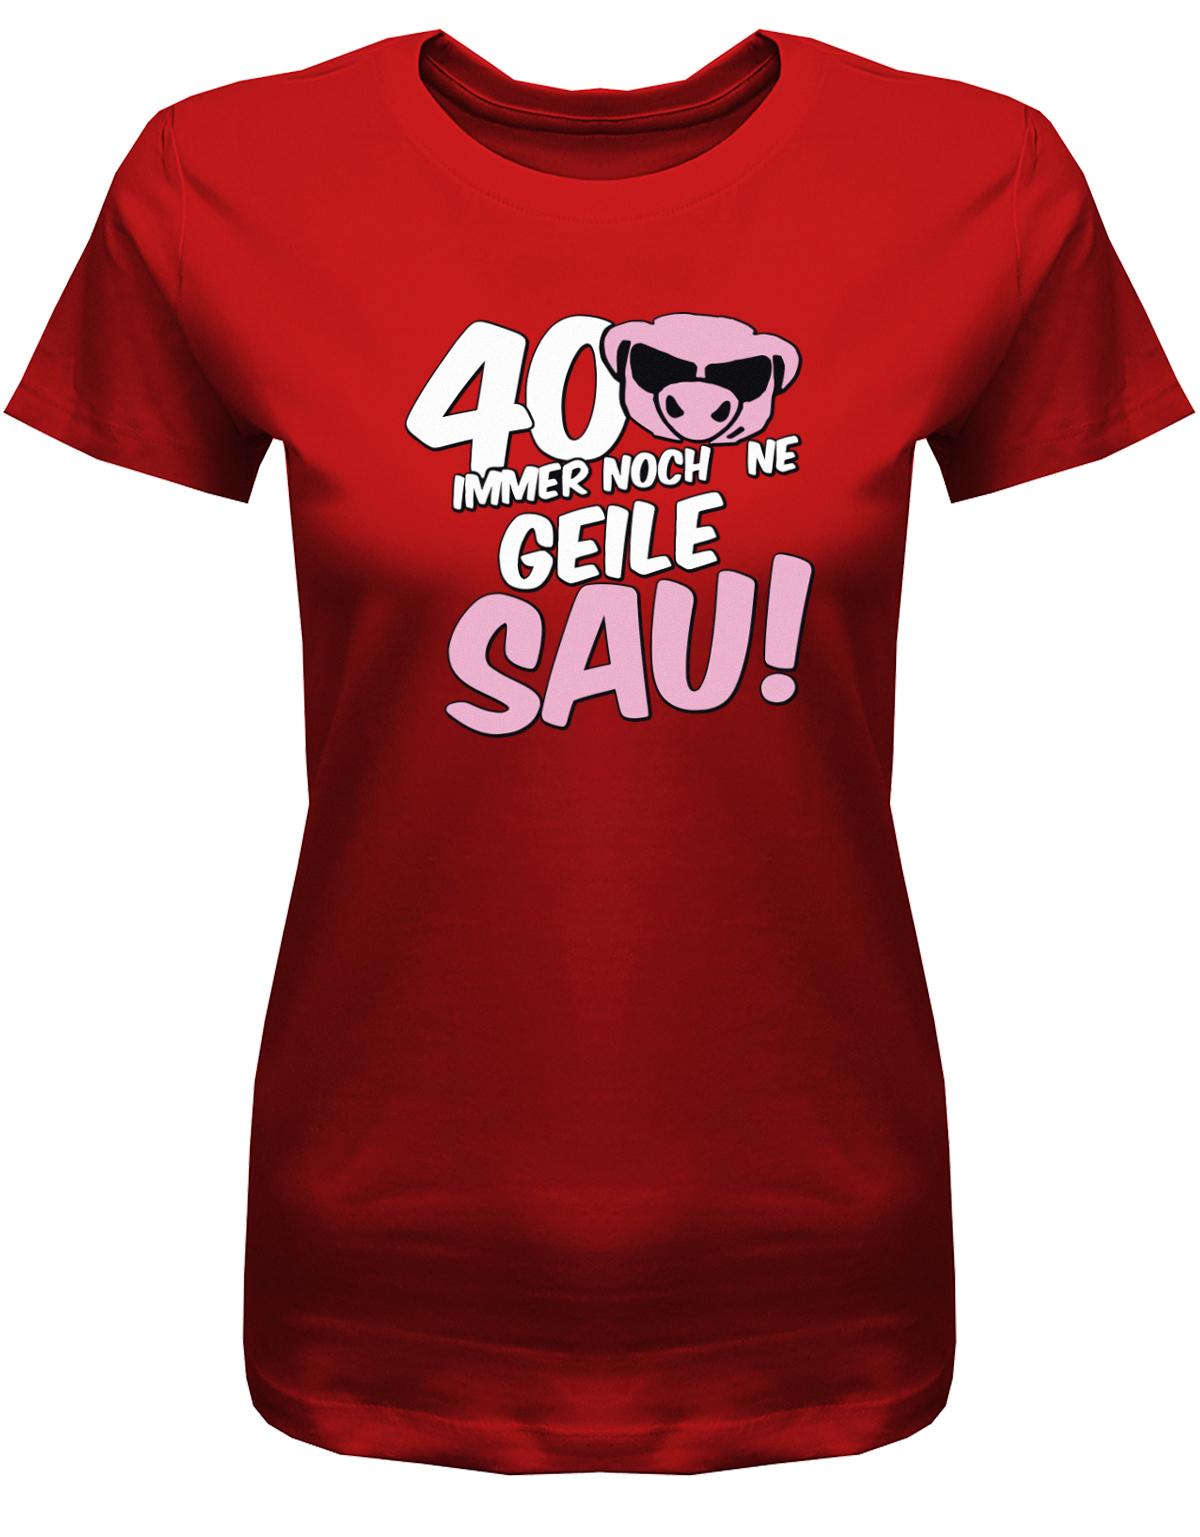 Lustiges T-Shirt zum 40 Geburtstag für die Frau Bedruckt mit 40 Immer noch 'ne geile Sau! Sau mit Sonnenbrille Rot